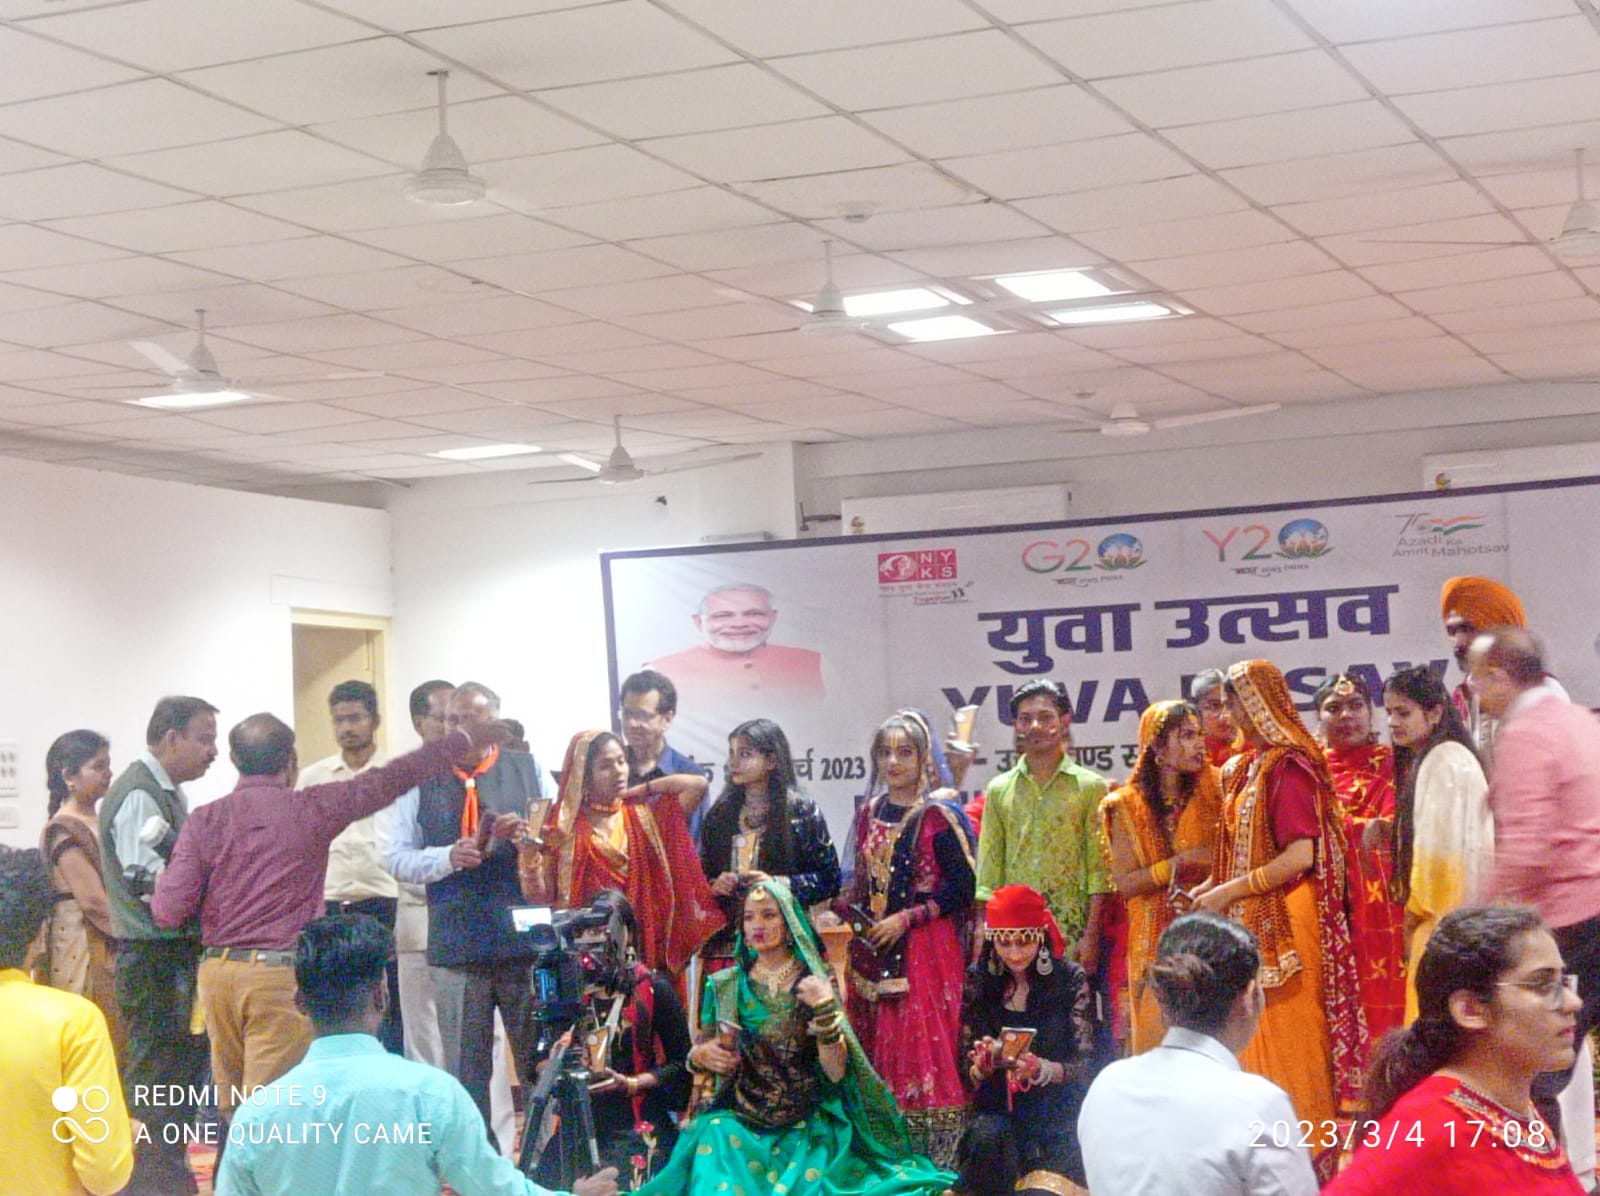 राजकमल कॉलेज के छात्रों ने युवा उत्सव-भारत 2047 कार्यक्रम में किया प्रतिभाग